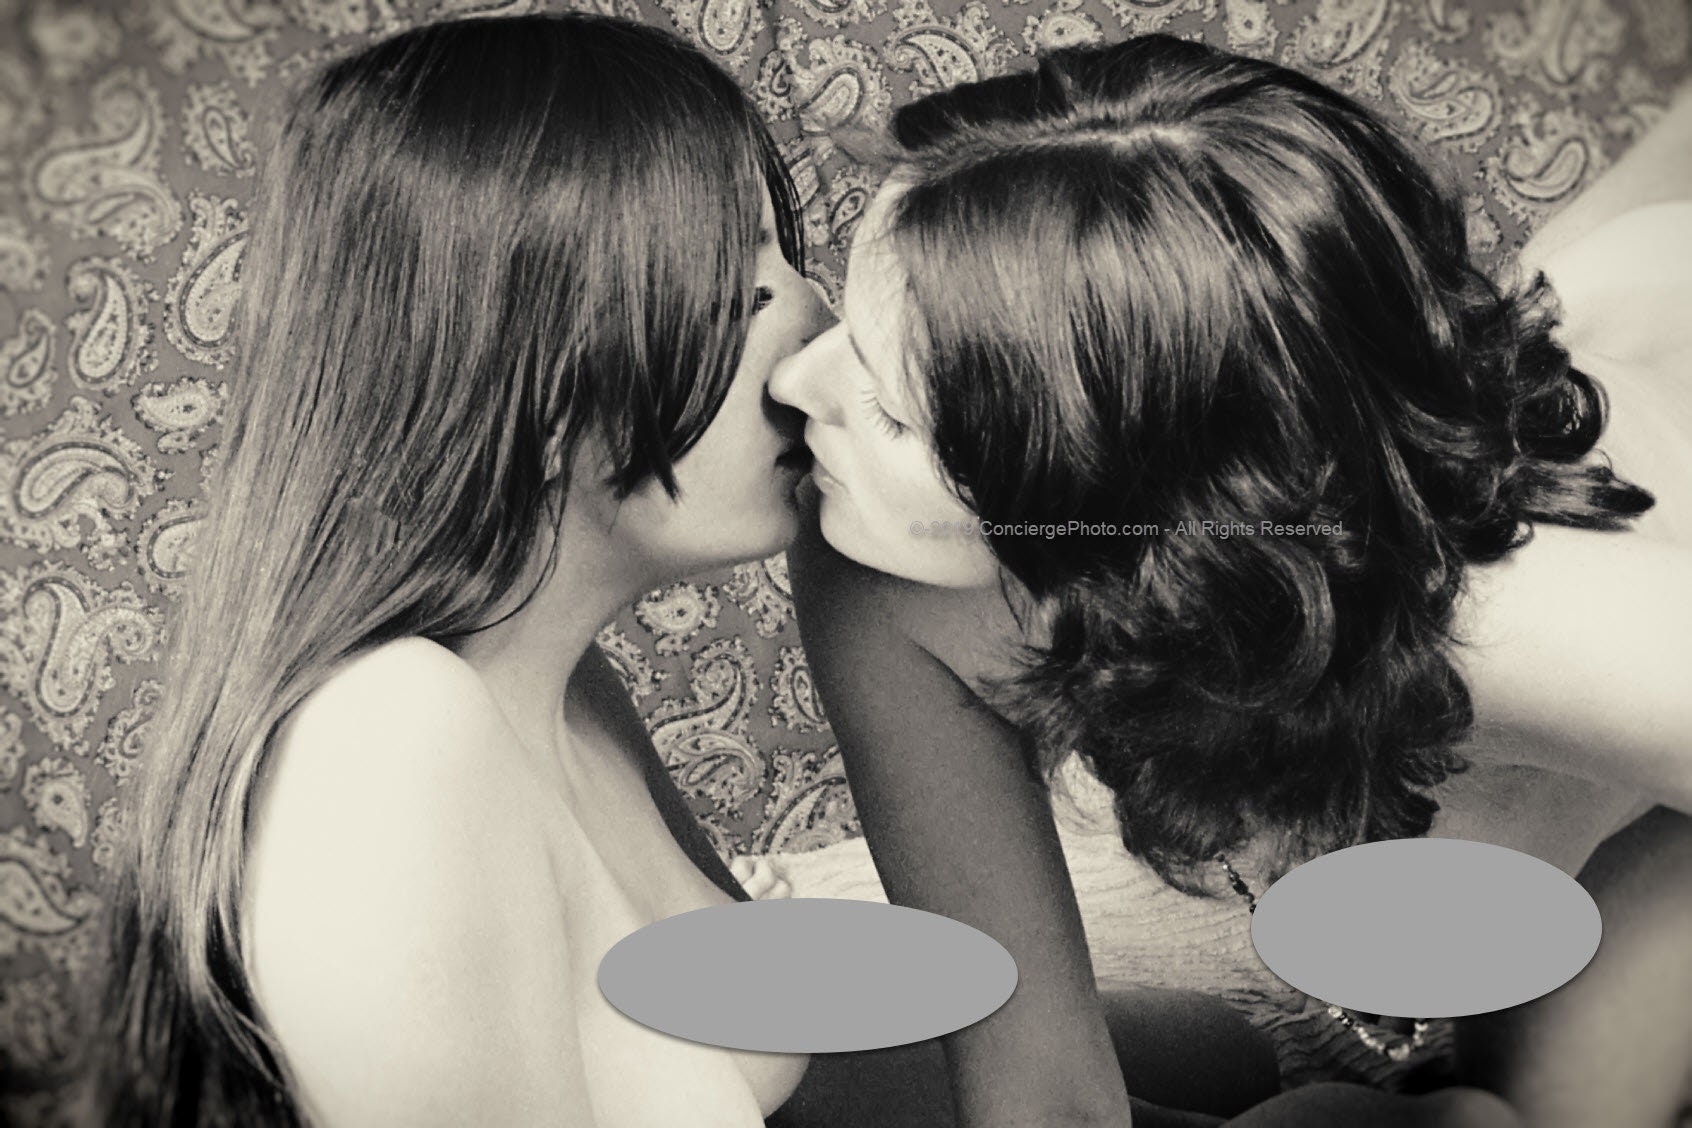 Vintage Mature 1970s Risque Photo 8x12 Bisexual Lesbian Couple